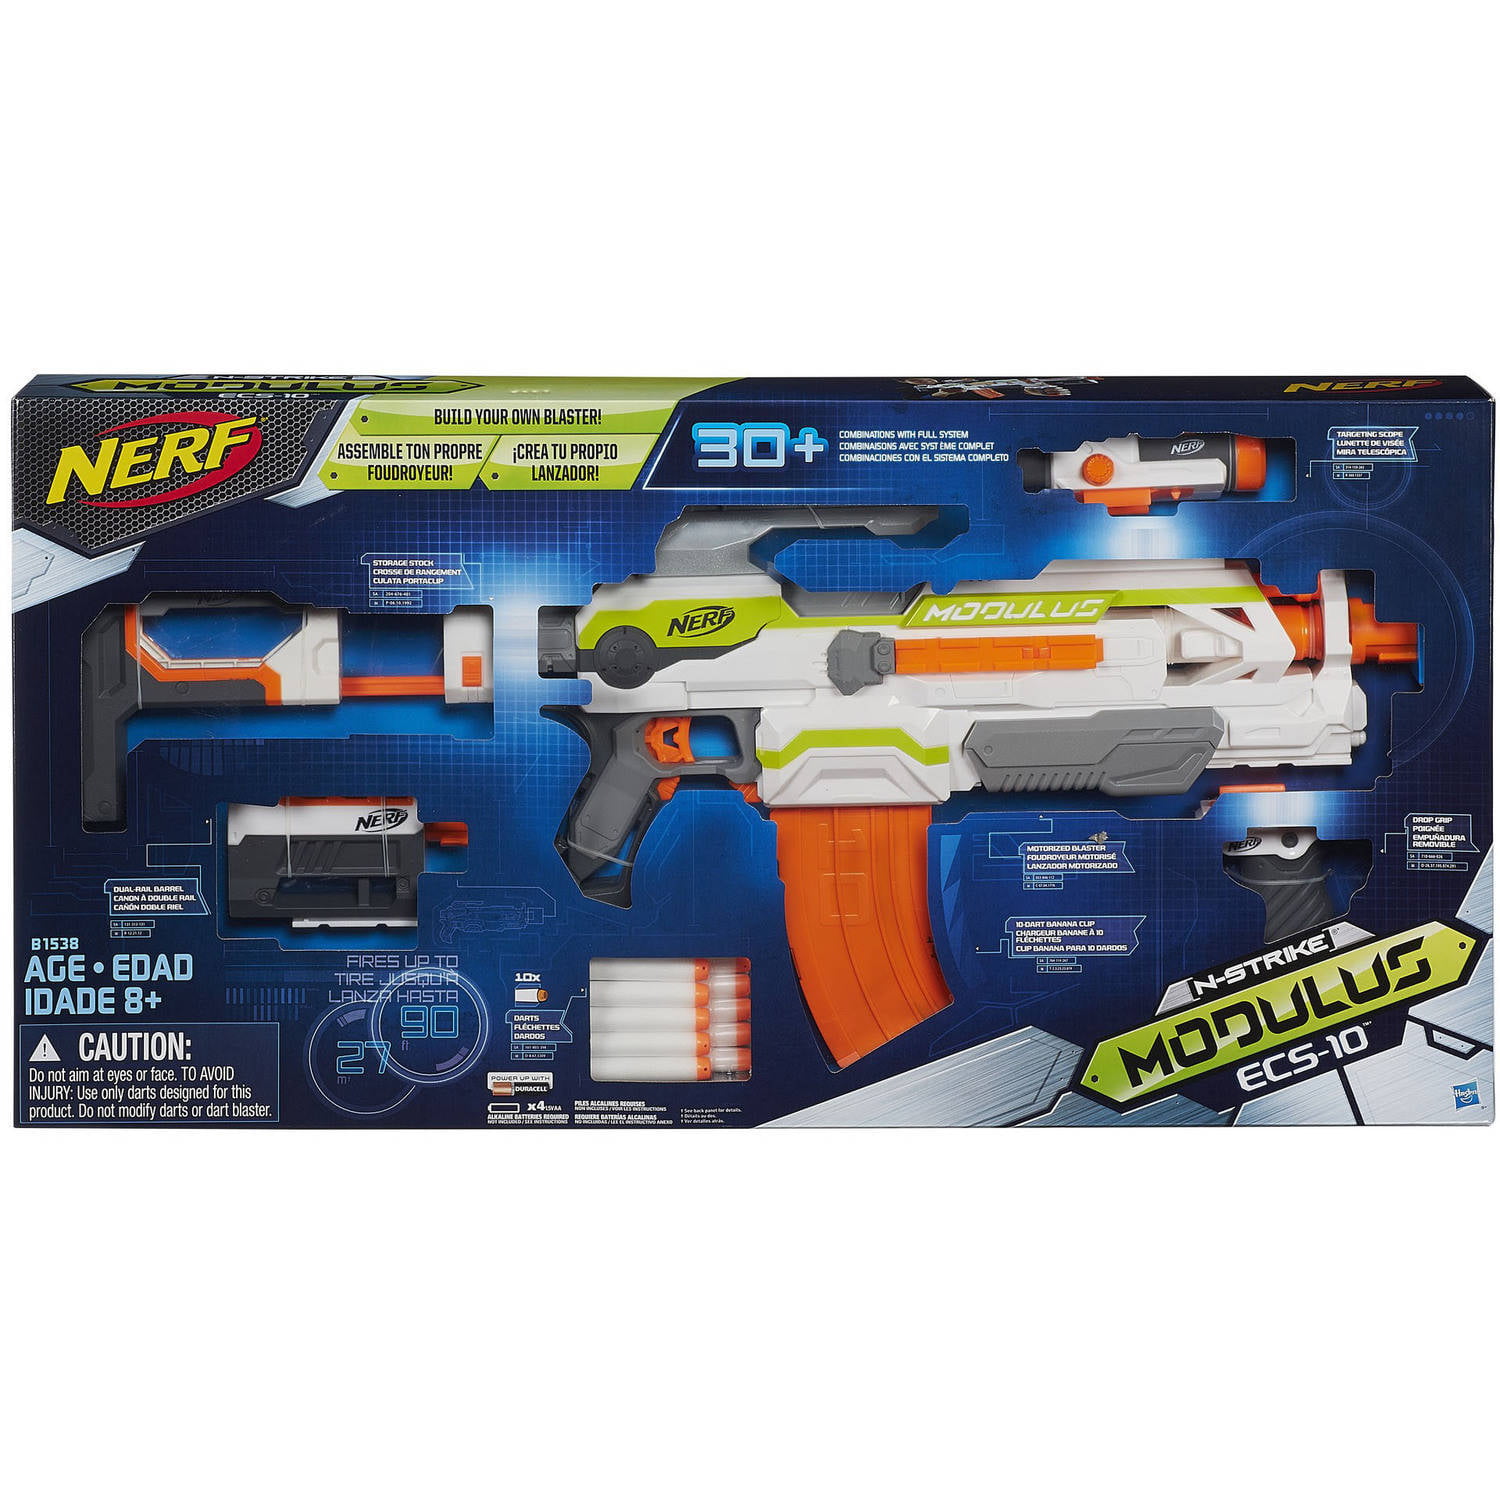 NERF N-strike B1538 Modulus ECS-10 Blaster for sale online 